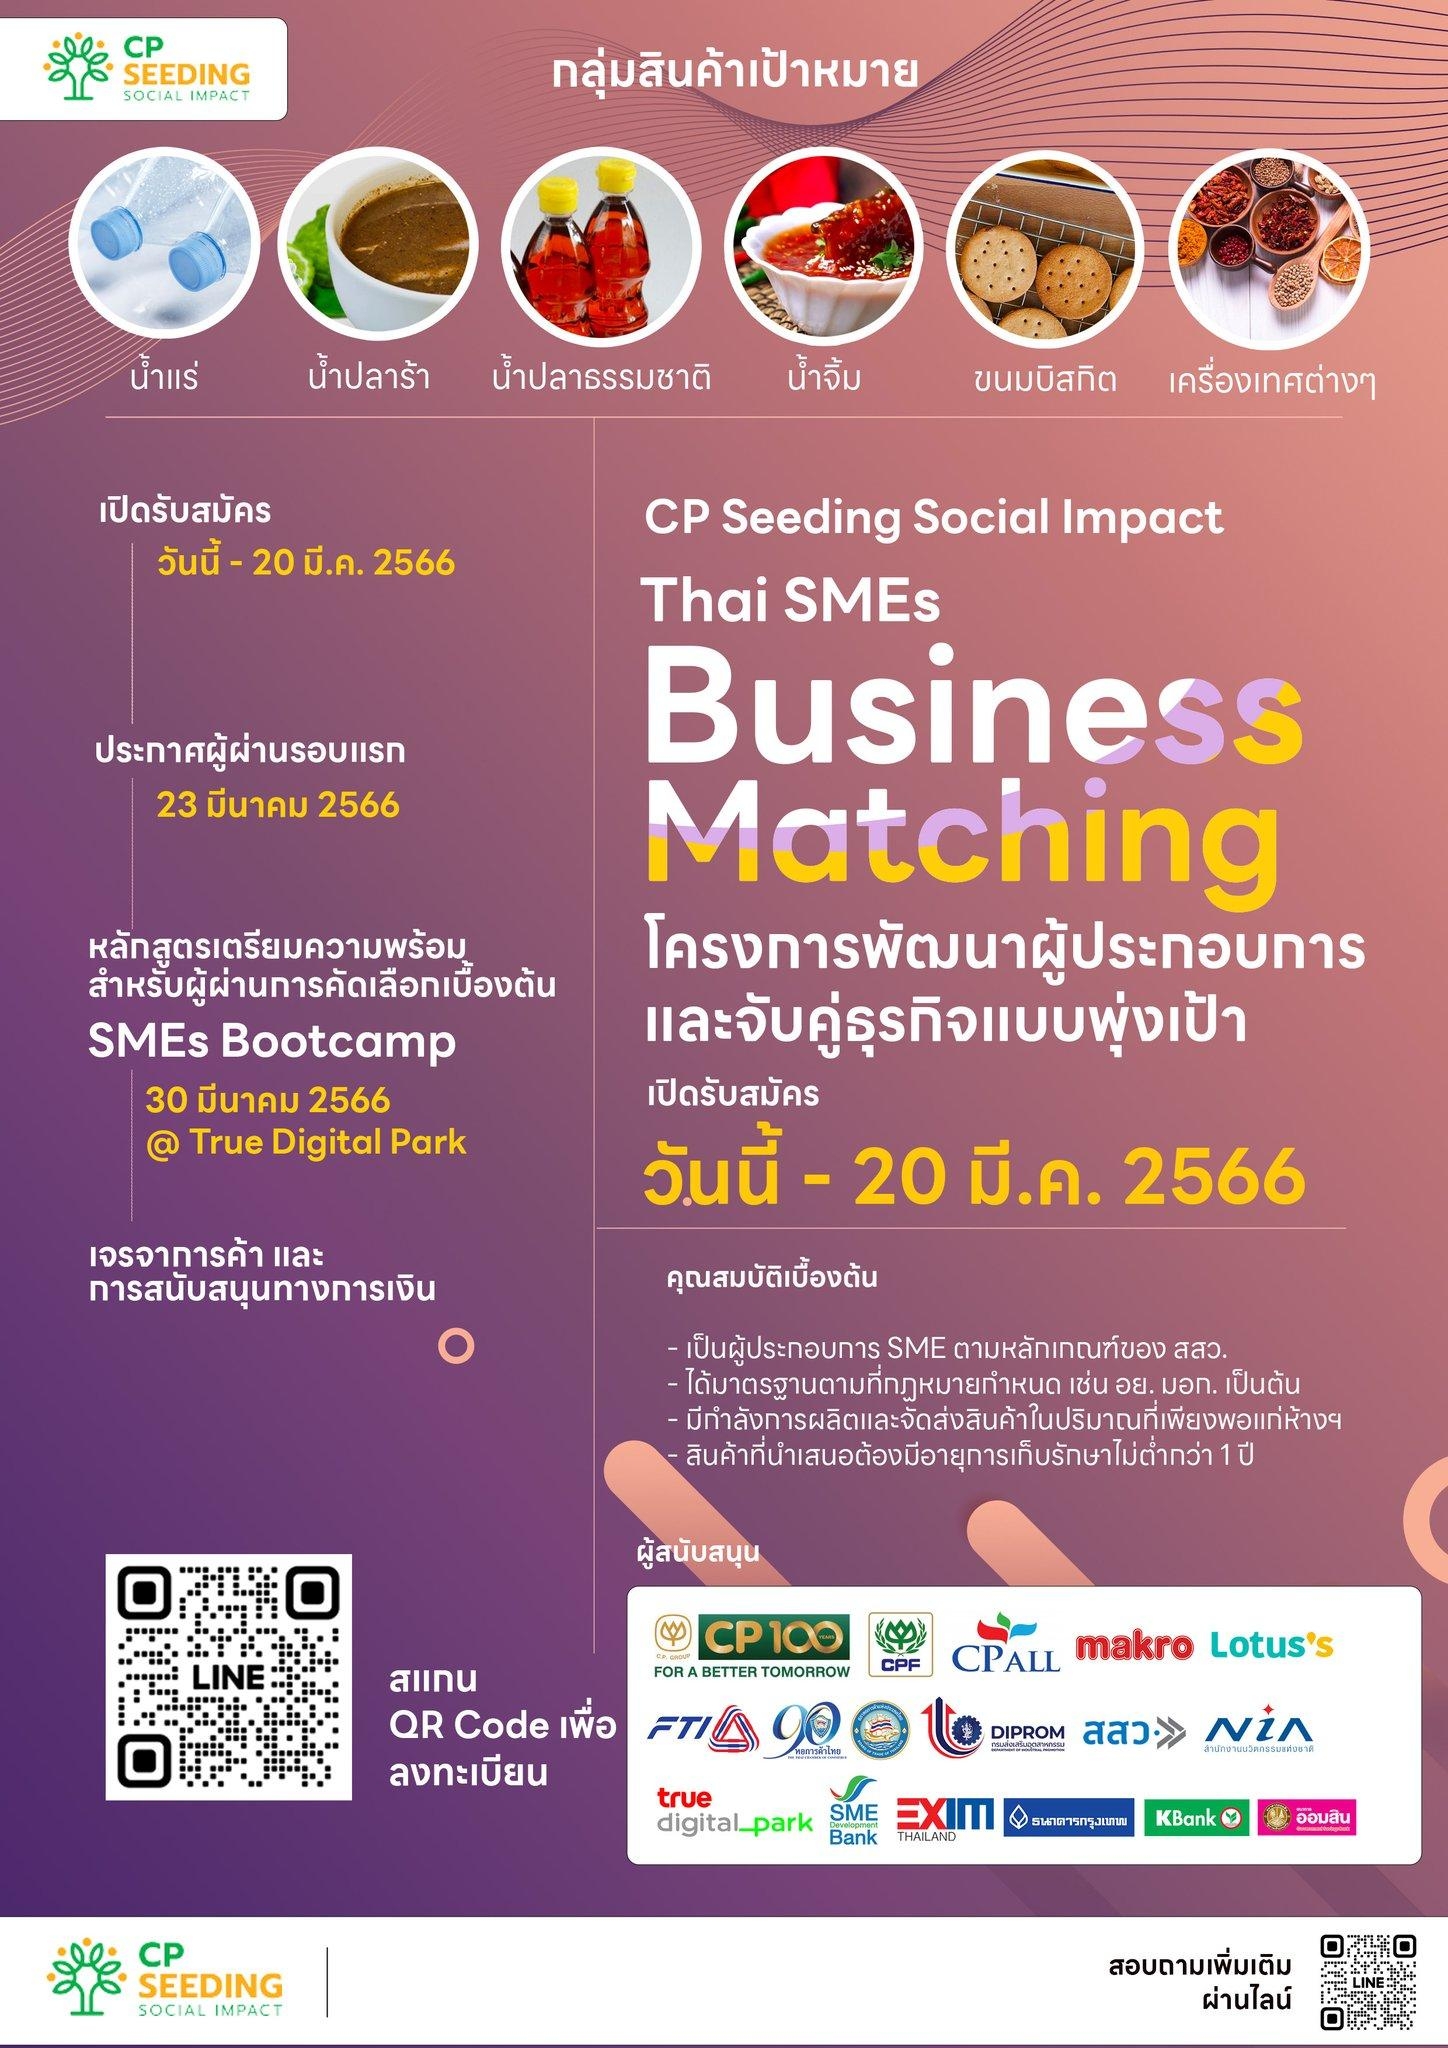 หอการค้าไทย และสภาหอการค้าแห่งประเทศไทย เชิญสมาชิก และเครือข่ายทั่วประเทศ เข้าร่วมโครงการพัฒนาผู้ประกอบการและจับคู่ธุรกิจแบบพุ่งเป้า